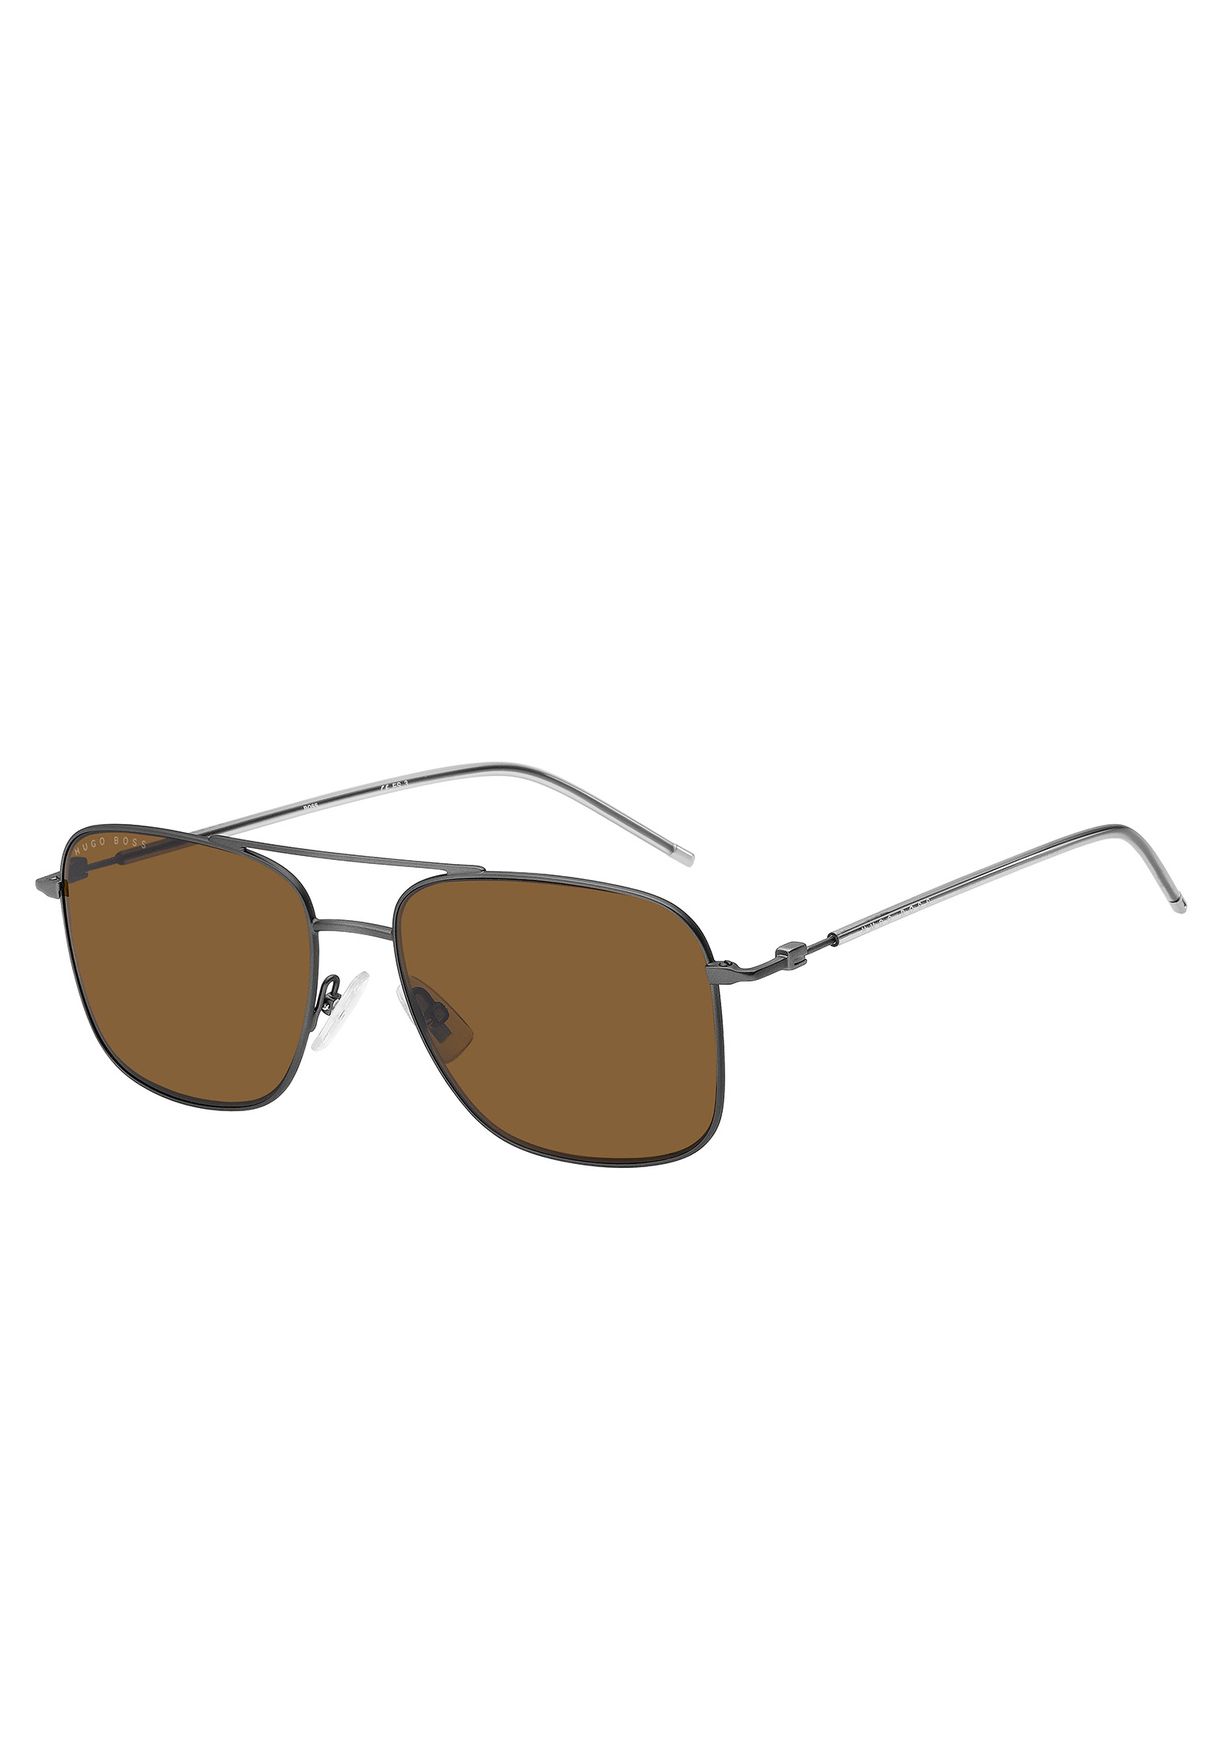 Wayfarers Sunglasses